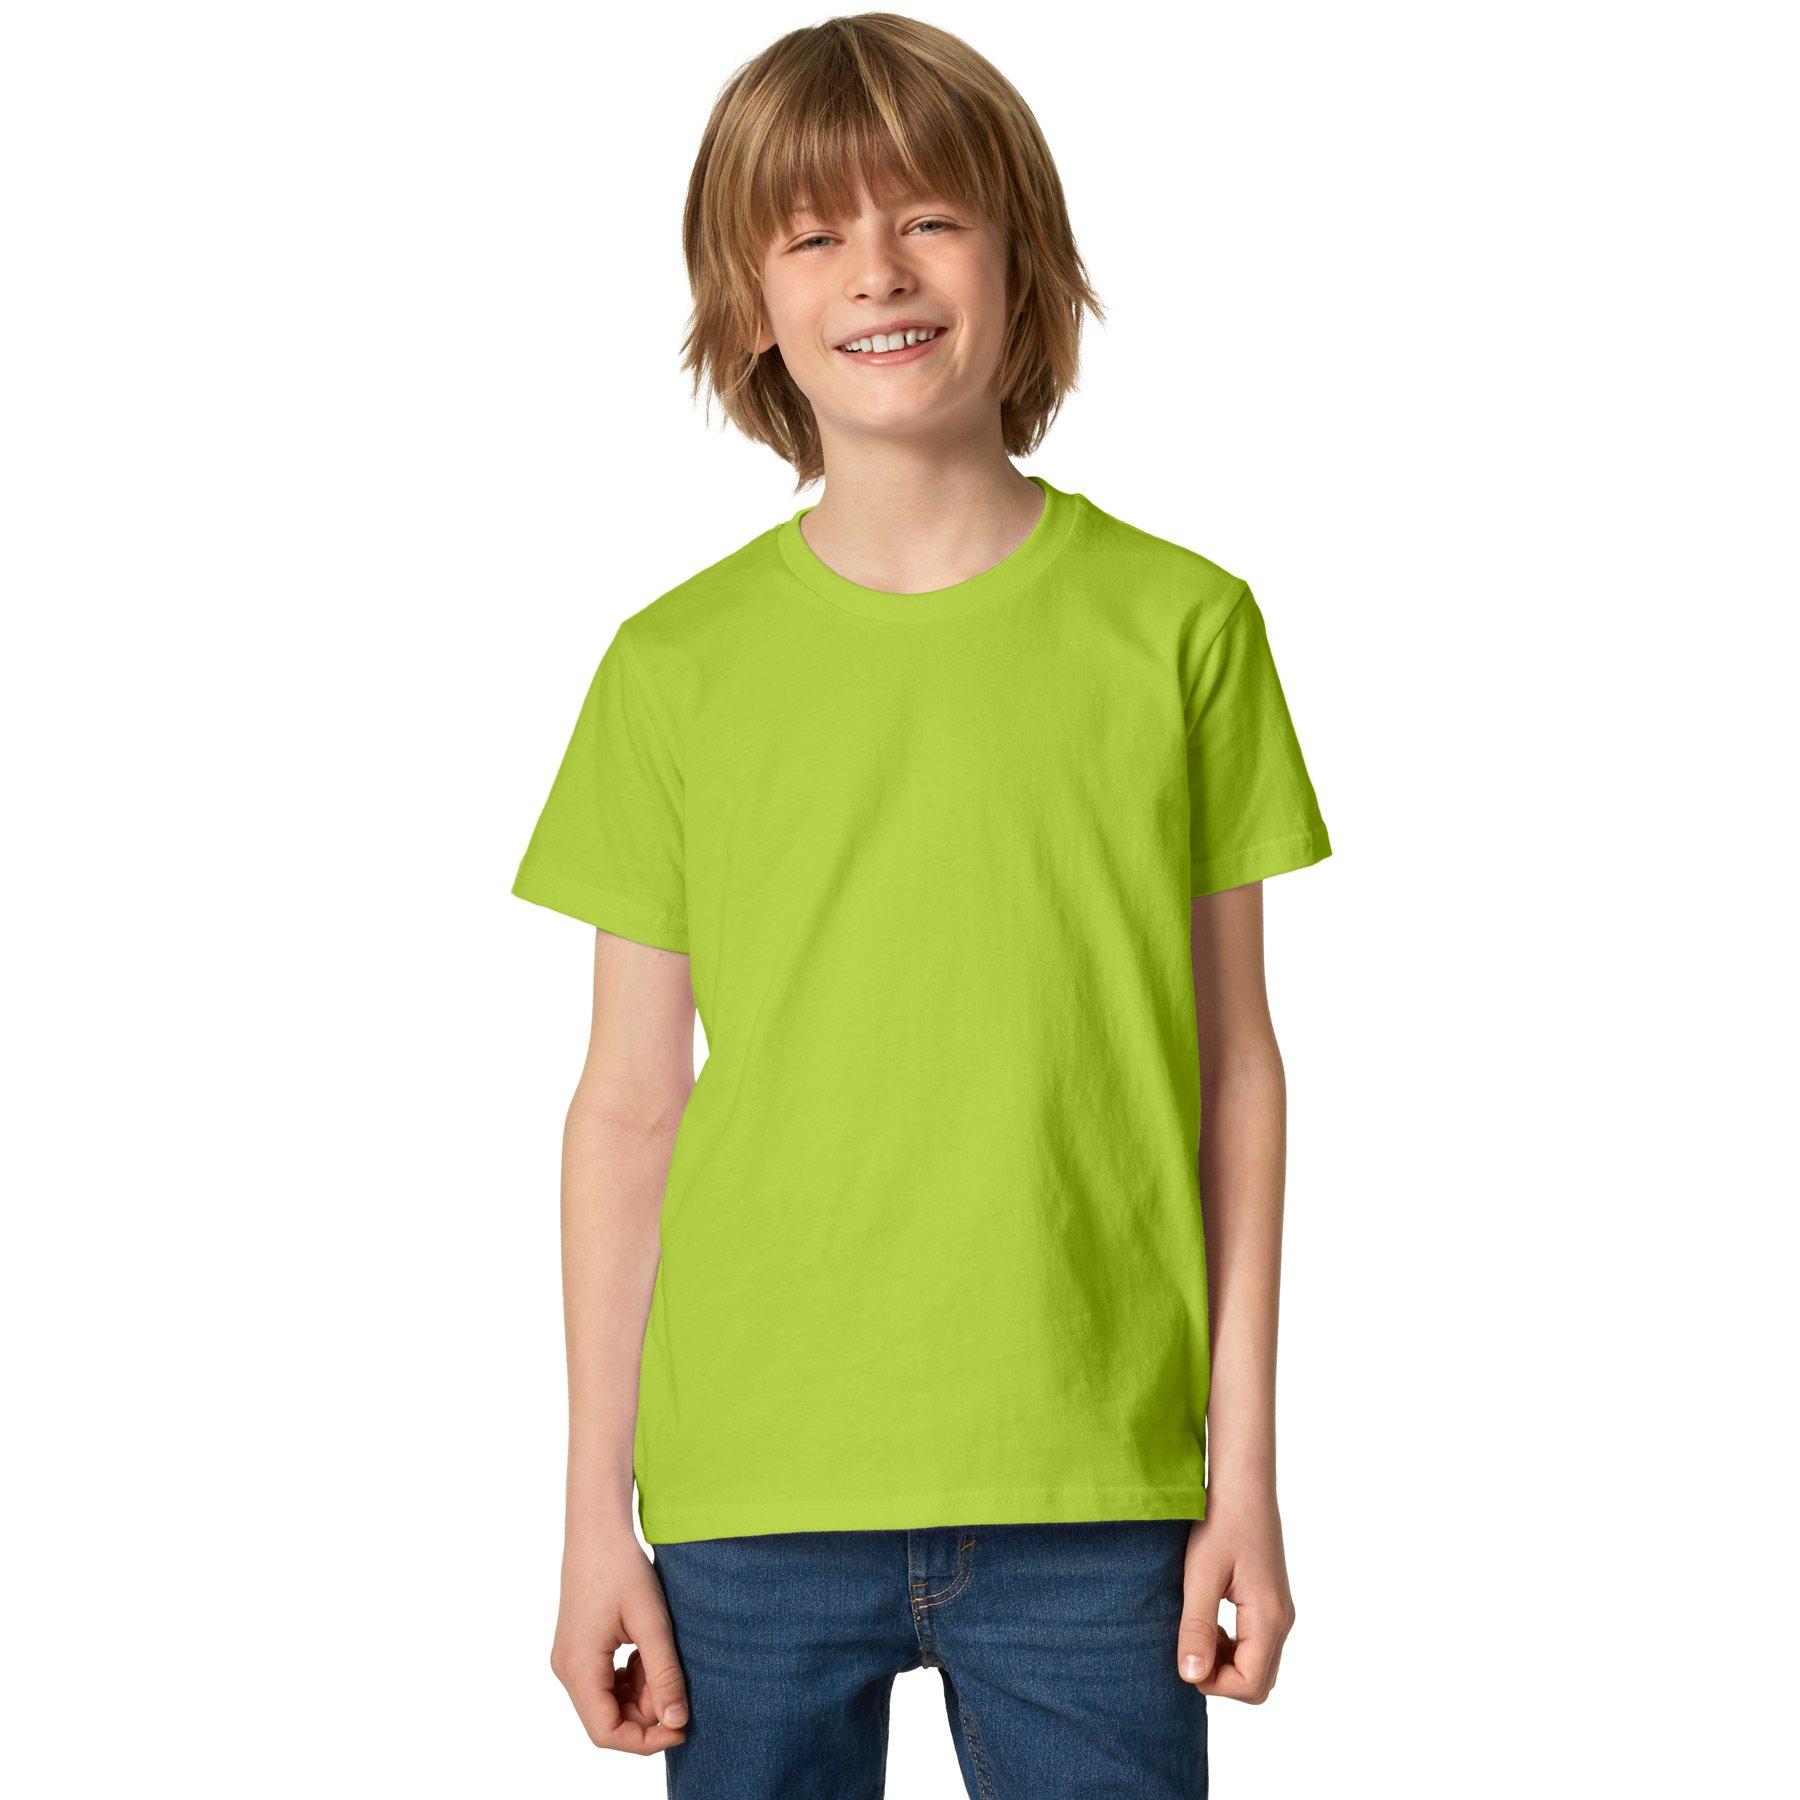 T-shirt Kinder Jungen Hellgrün 140 von Tectake